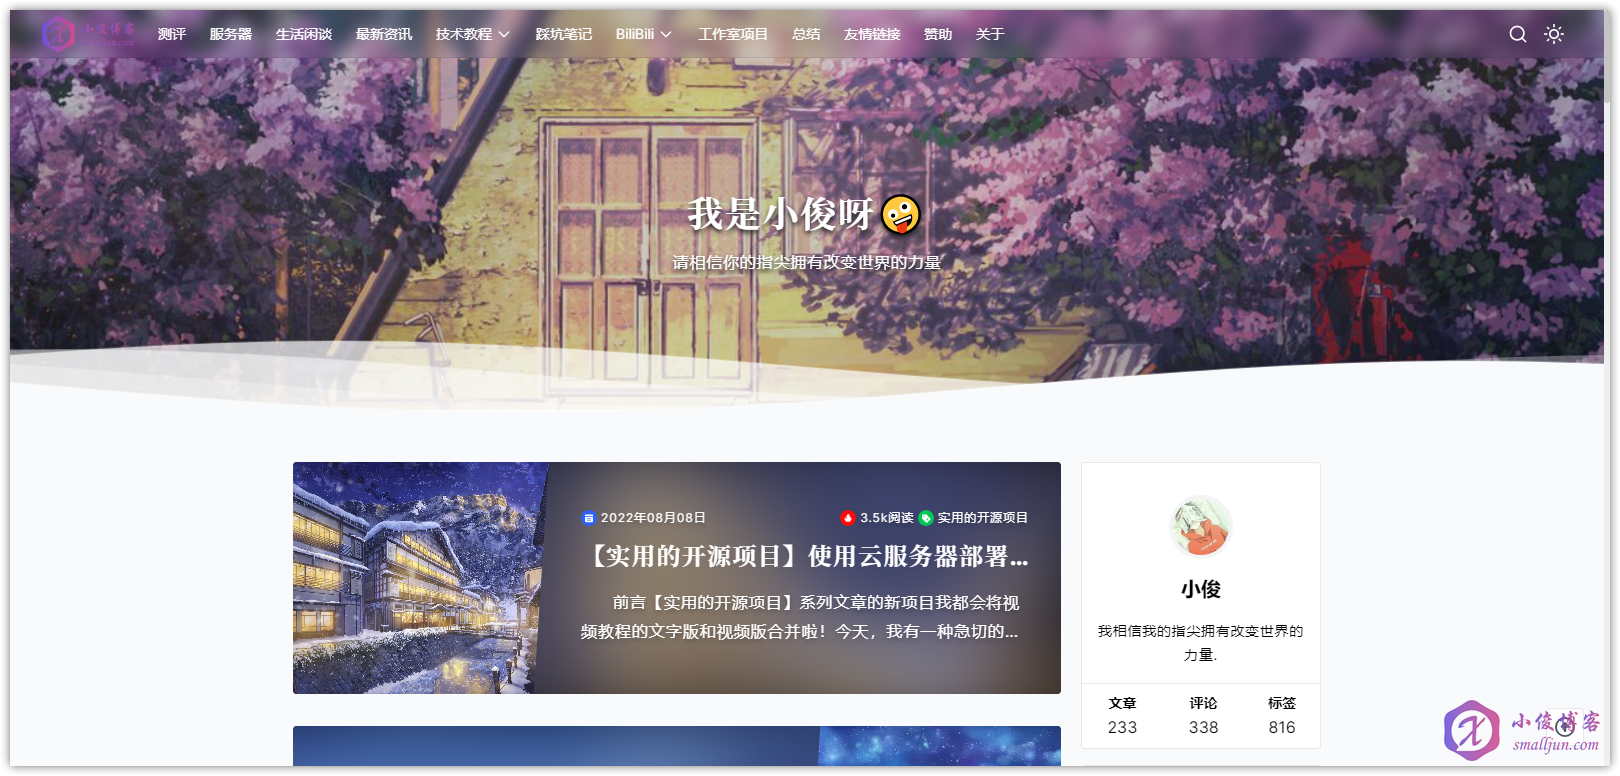 【声明】小俊博客于2022年8月14日正式更换域名